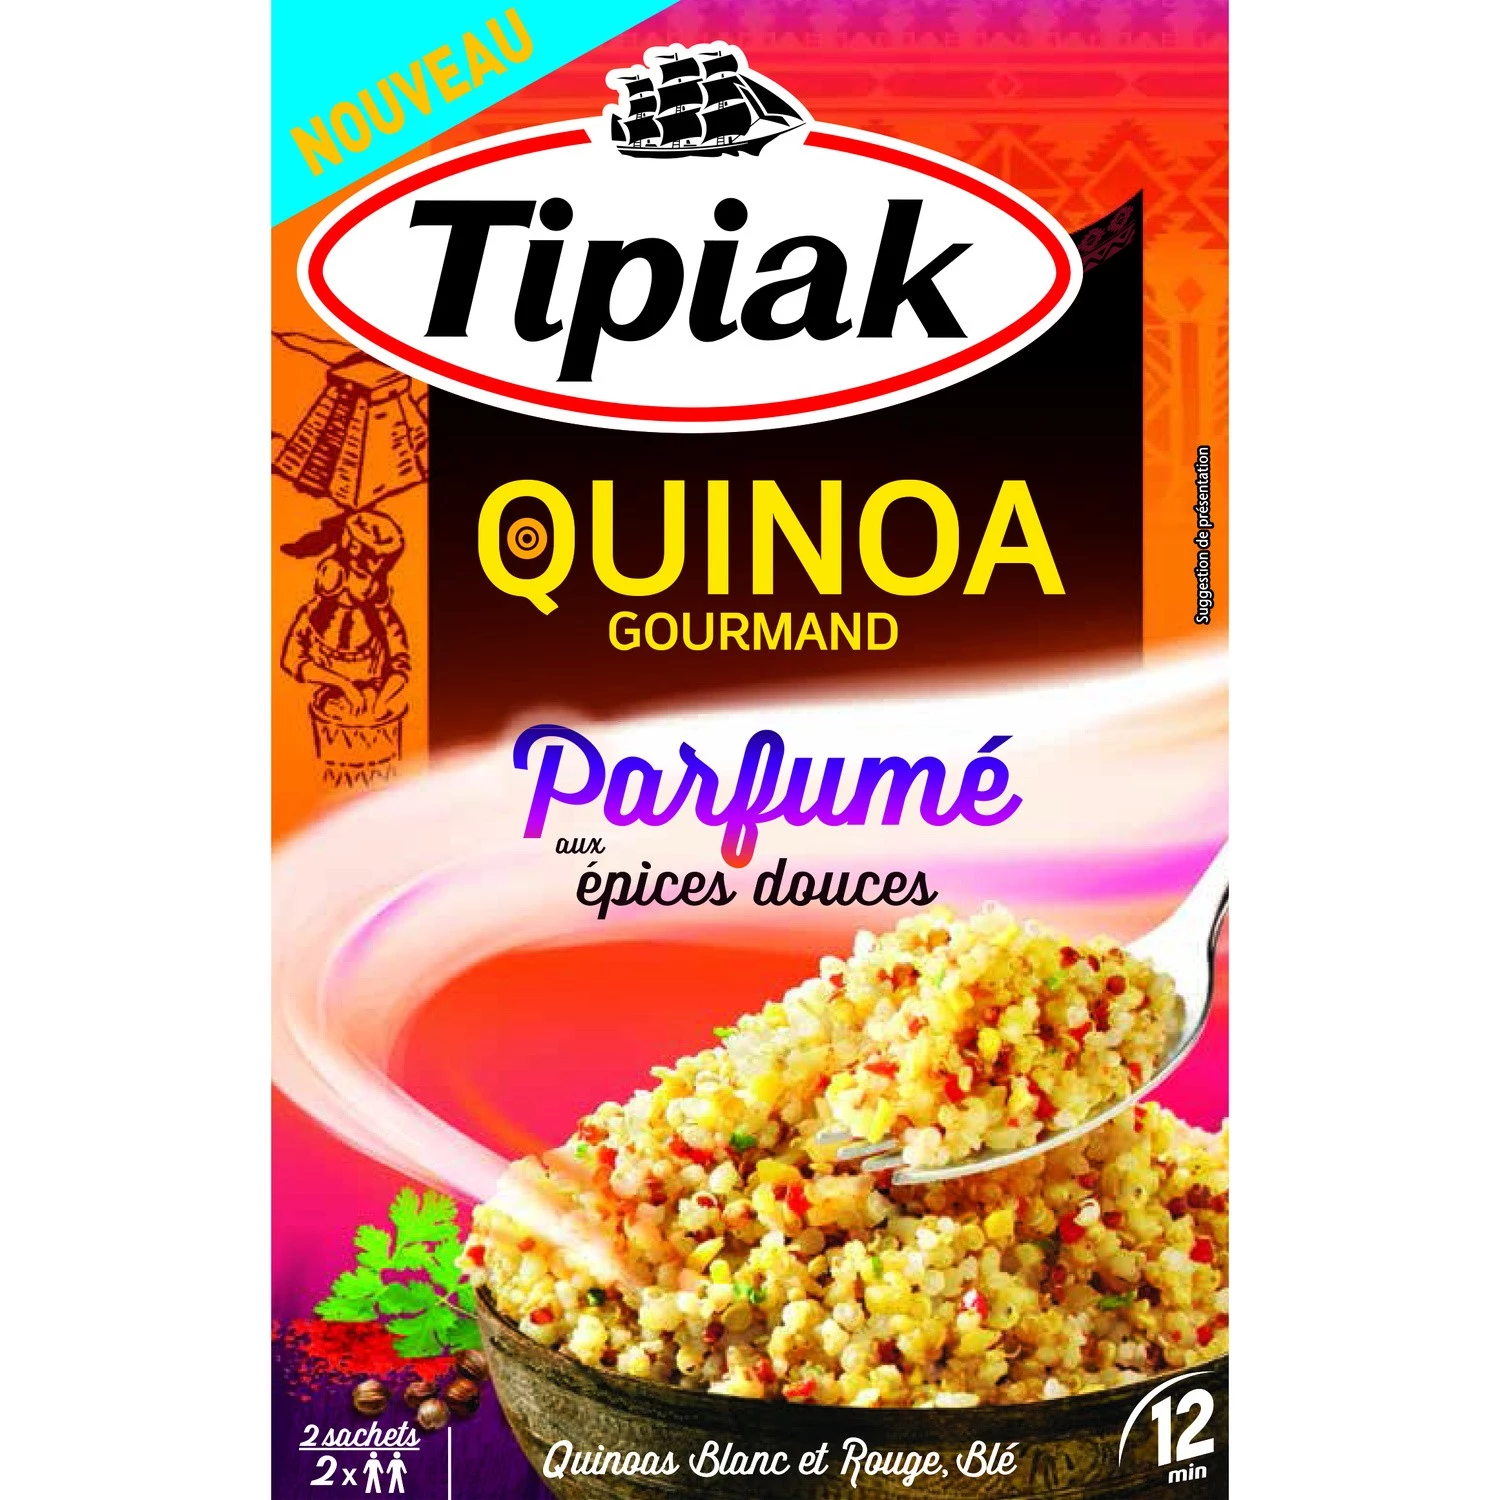 Quinua gourmet aromatizada con especias dulces 2x120g - TIPIAK